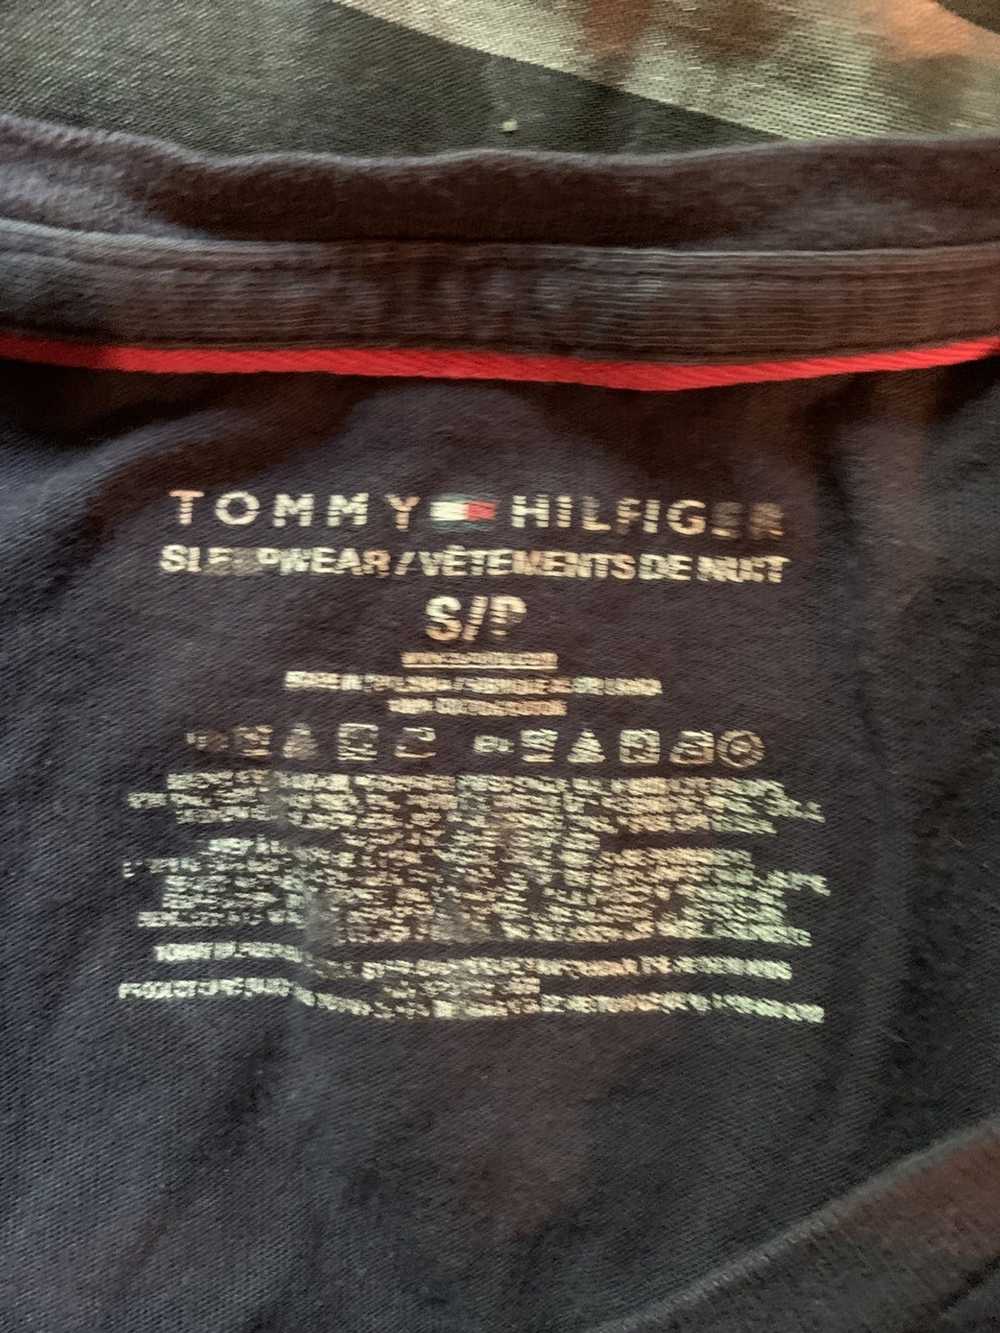 Tommy Hilfiger Tommy Hilfiger Logo T shirt - image 3